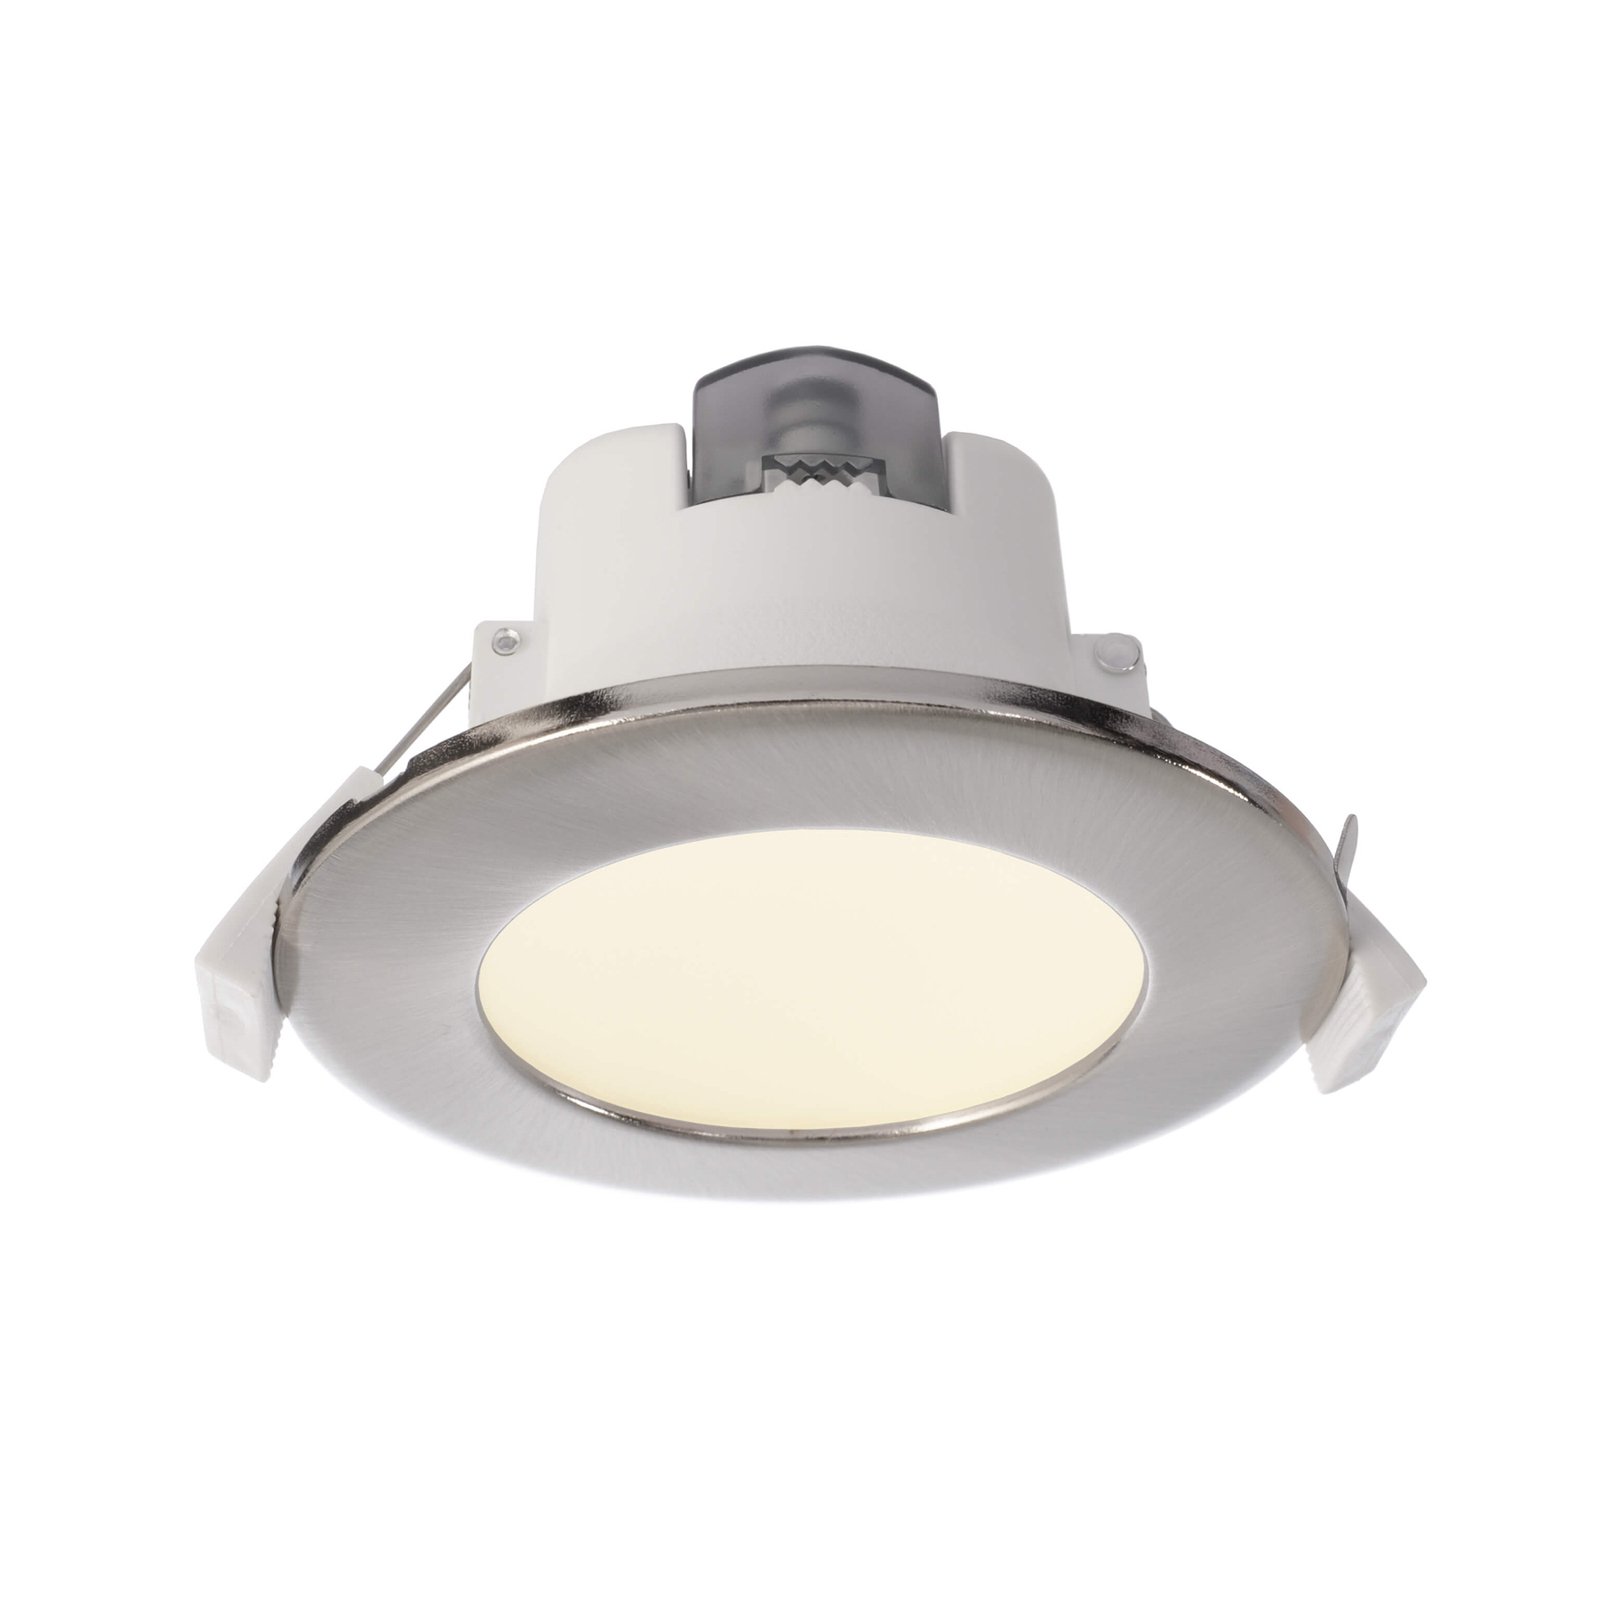 LED-Einbauleuchte Acrux 68, weiß, Ø 9,5 cm